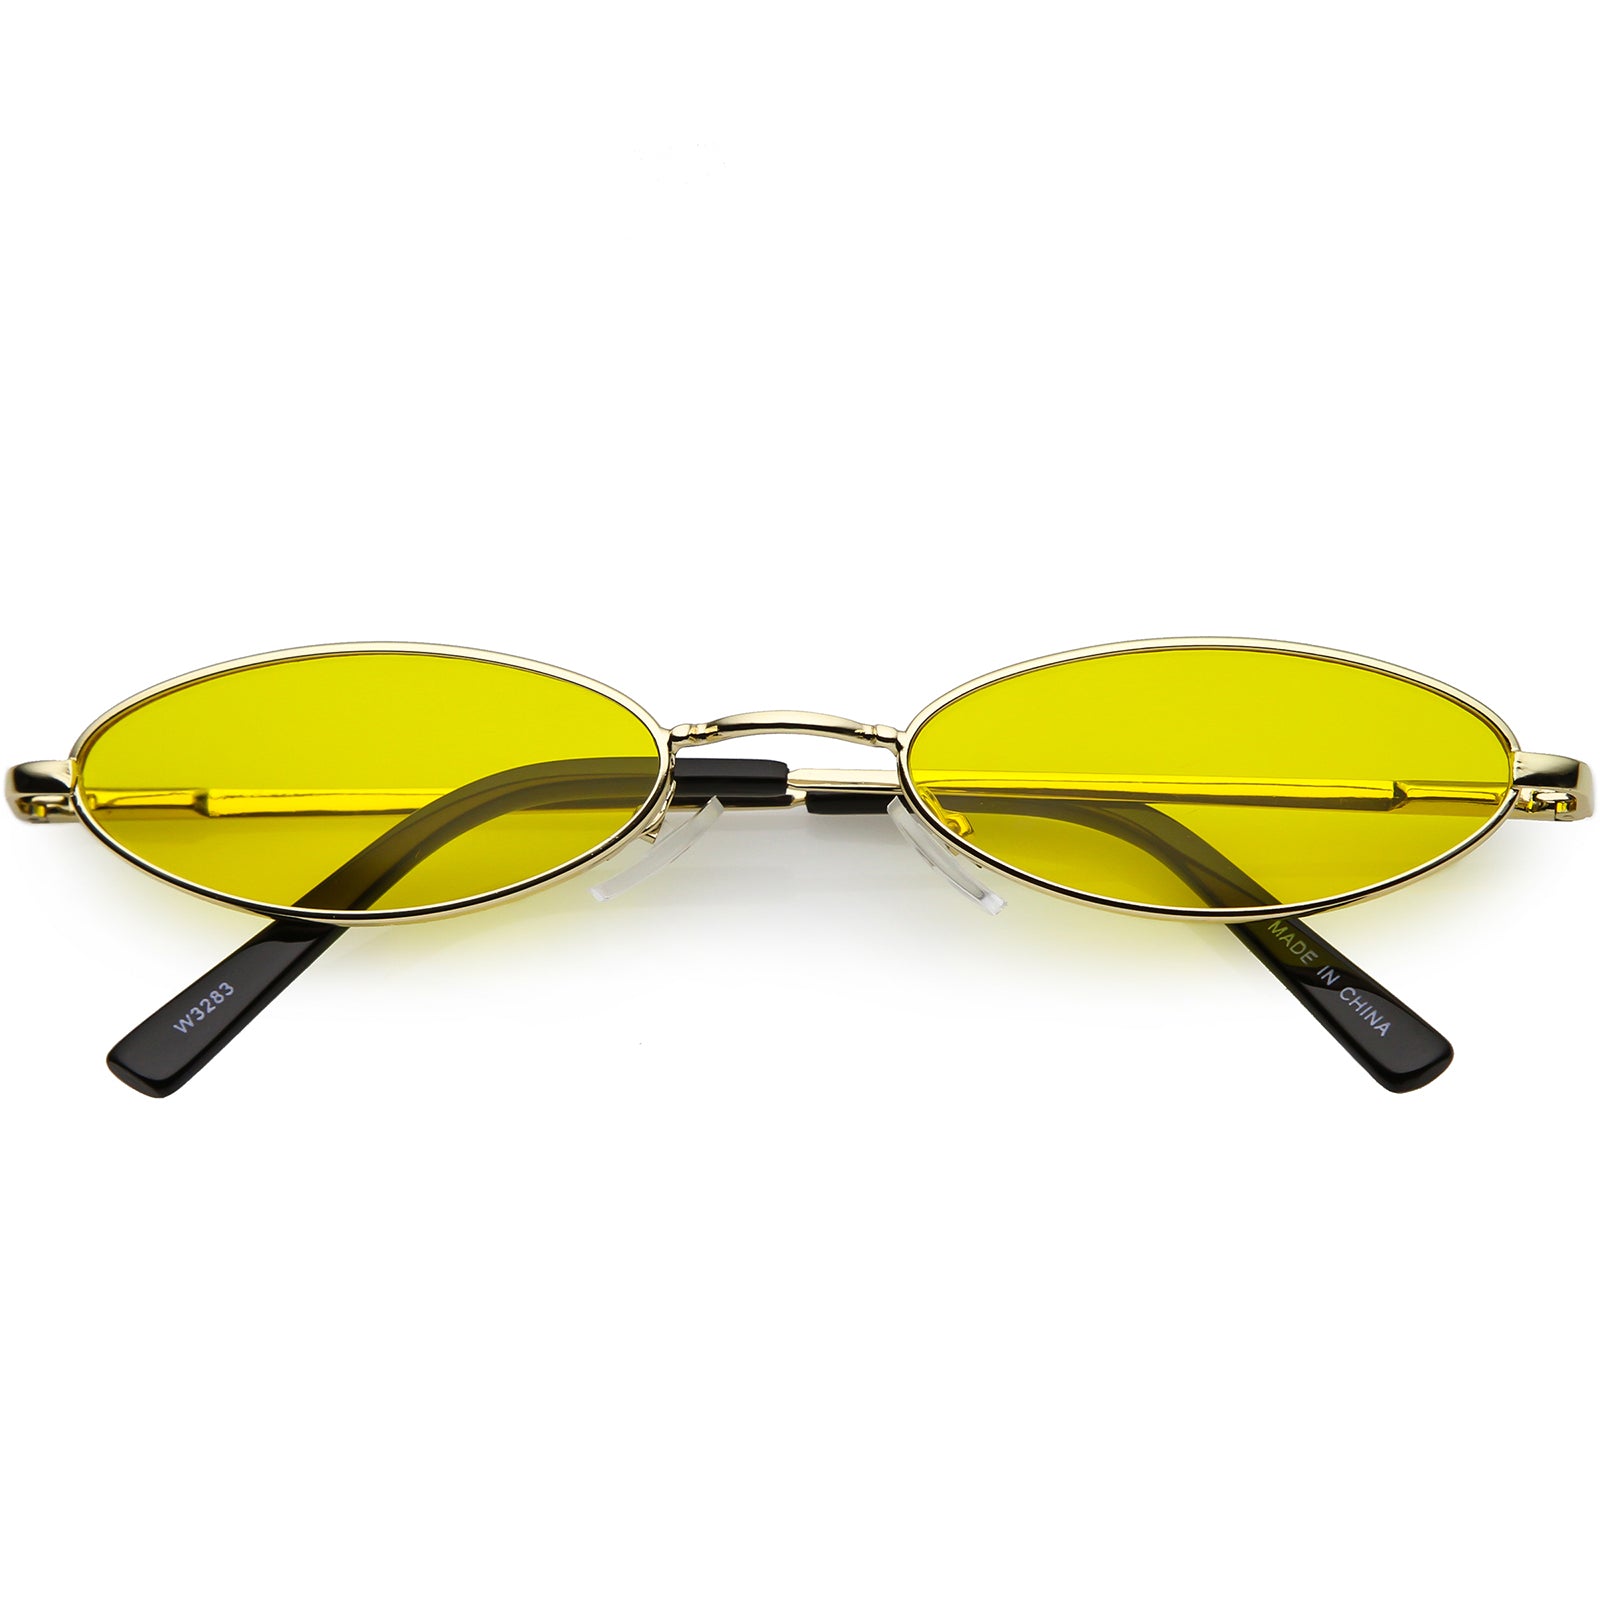 Slim Oval Sunglasses